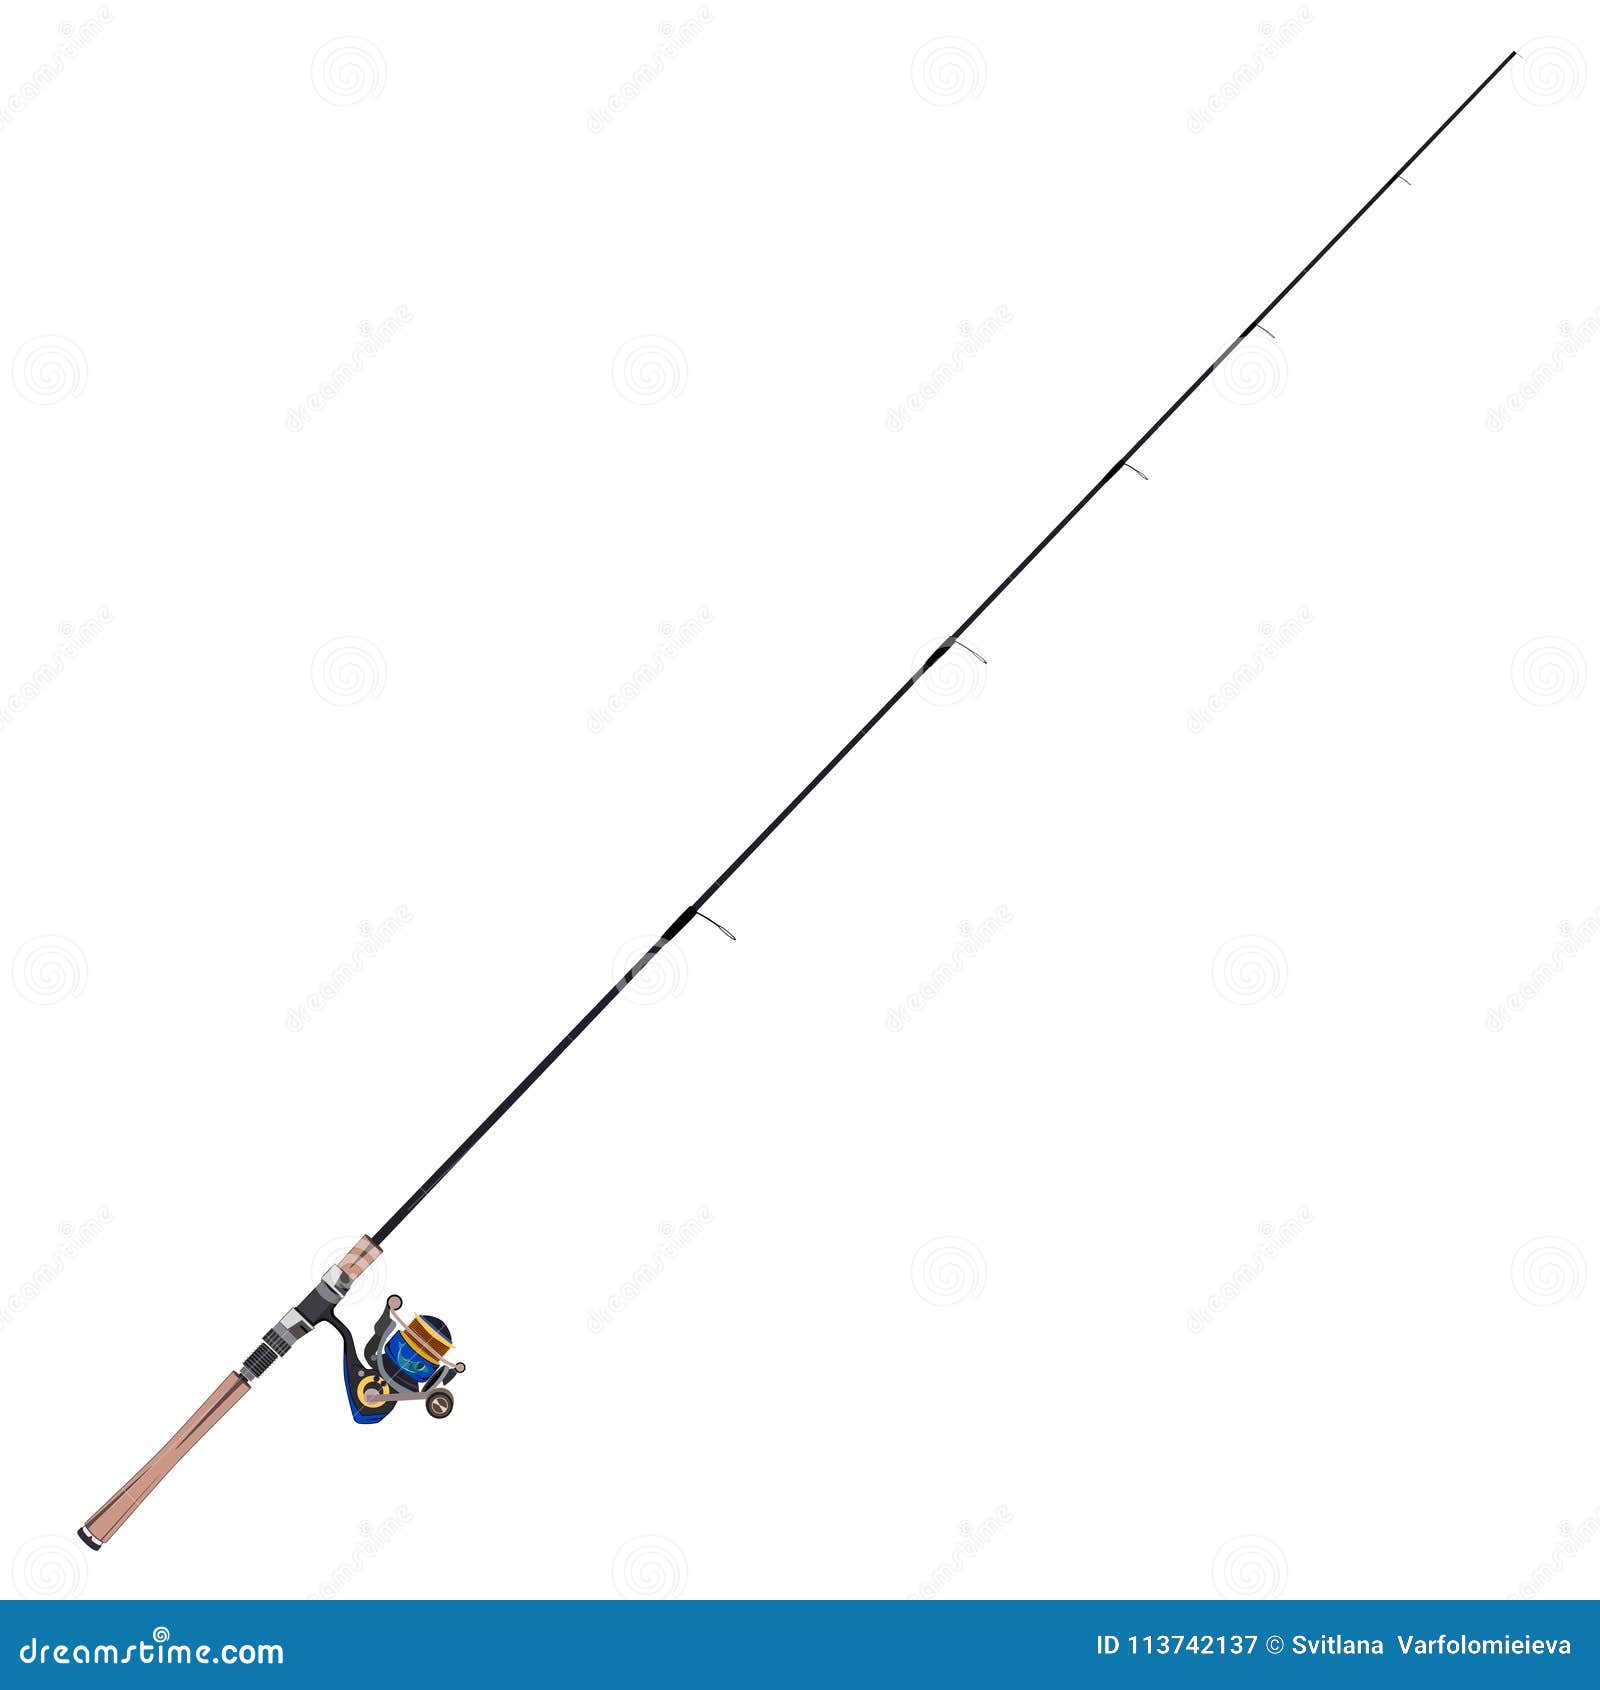 Fishing Rod Vector Stock Illustrations – 29,174 Fishing Rod Vector Stock  Illustrations, Vectors & Clipart - Dreamstime